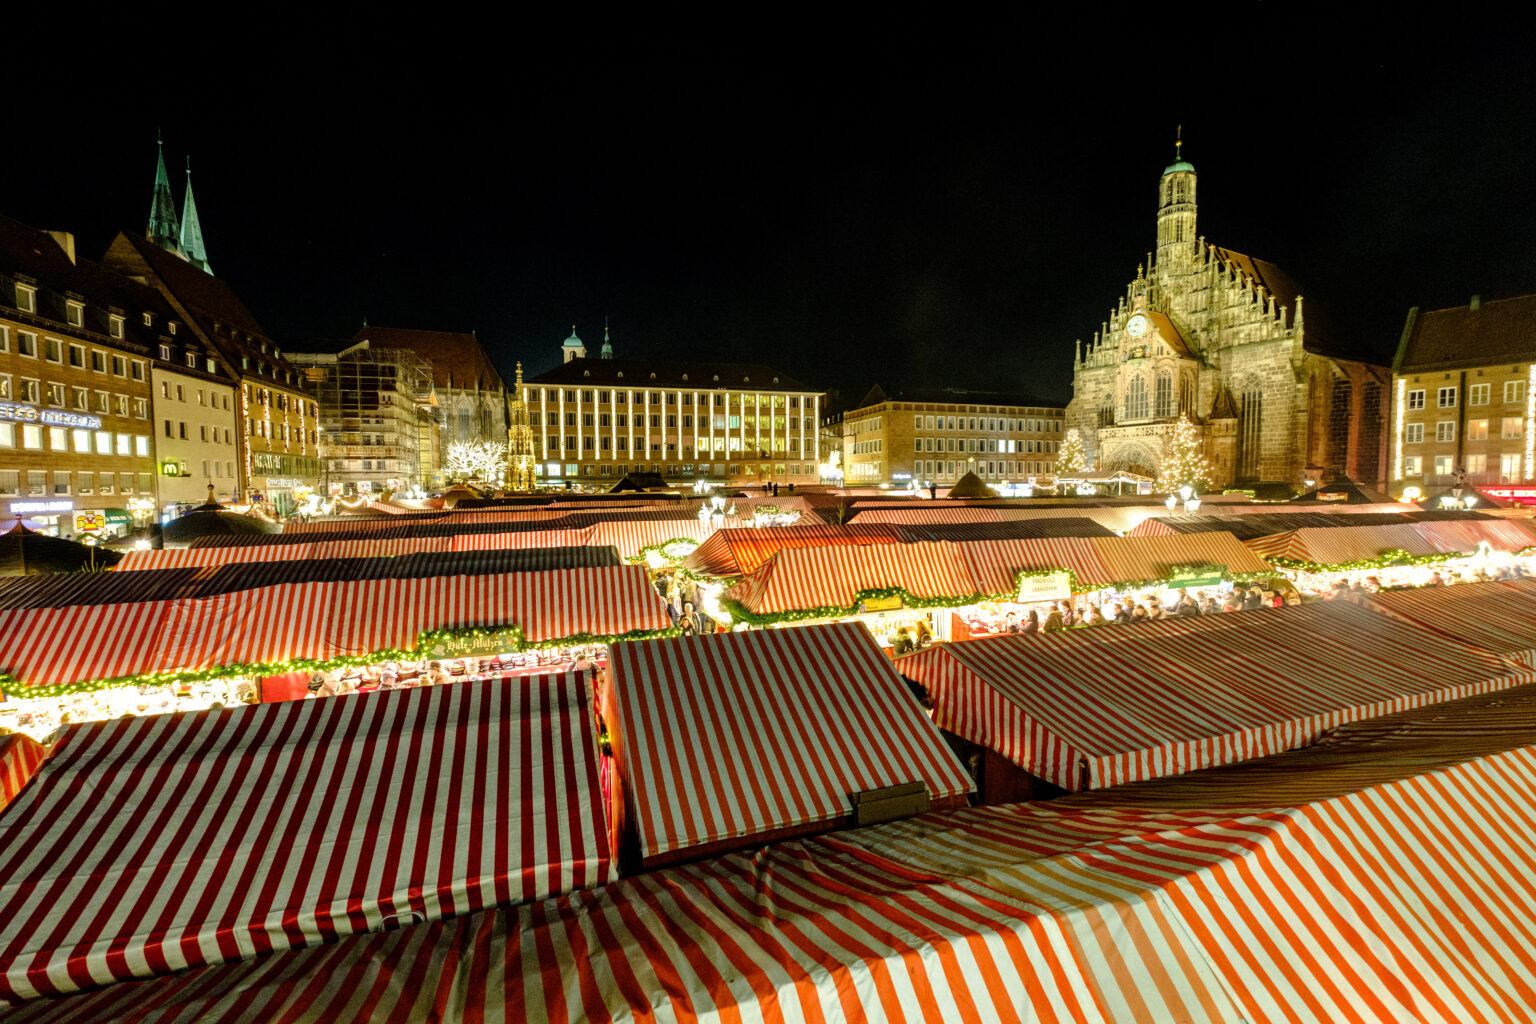 Ein Blick über den Nürnberger Christkindlesmarkt bei nacht. Im Vordergrund sind die Buden mit den rot-weiß gestreiften Dächern zu sehen. Im Hintergrund ragt die Frauenkirche über die Buden.